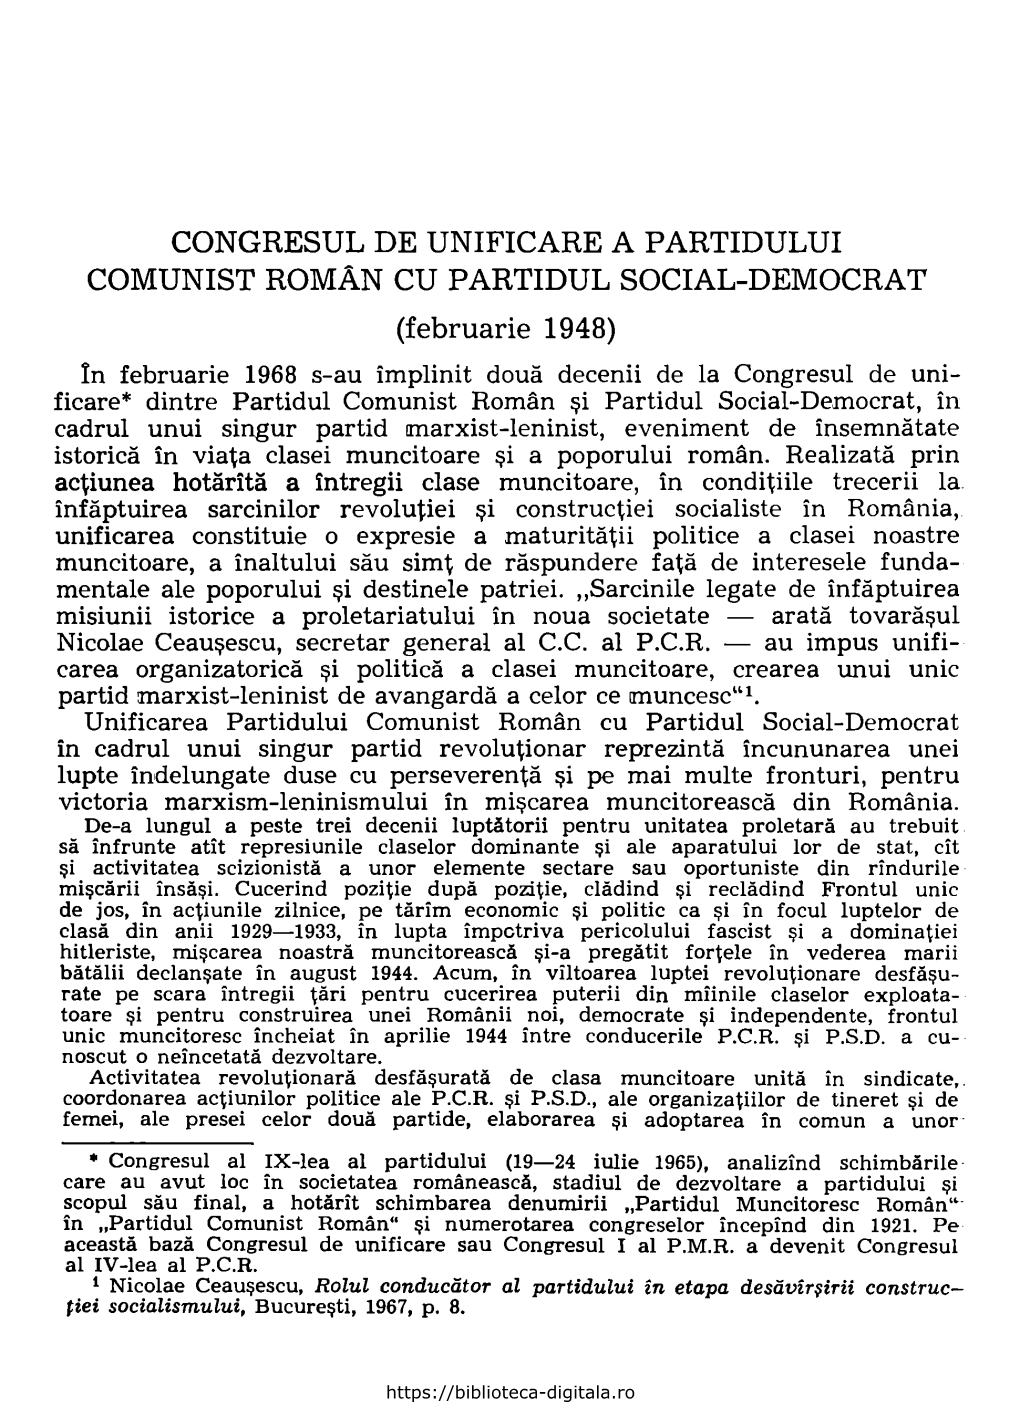 CONGRESUL DE UNIFICARE a PARTIDULUI COMUNIST ROMAN CU PARTIDUL SOCIAL-DEMOCRAT (Februarie 1948)